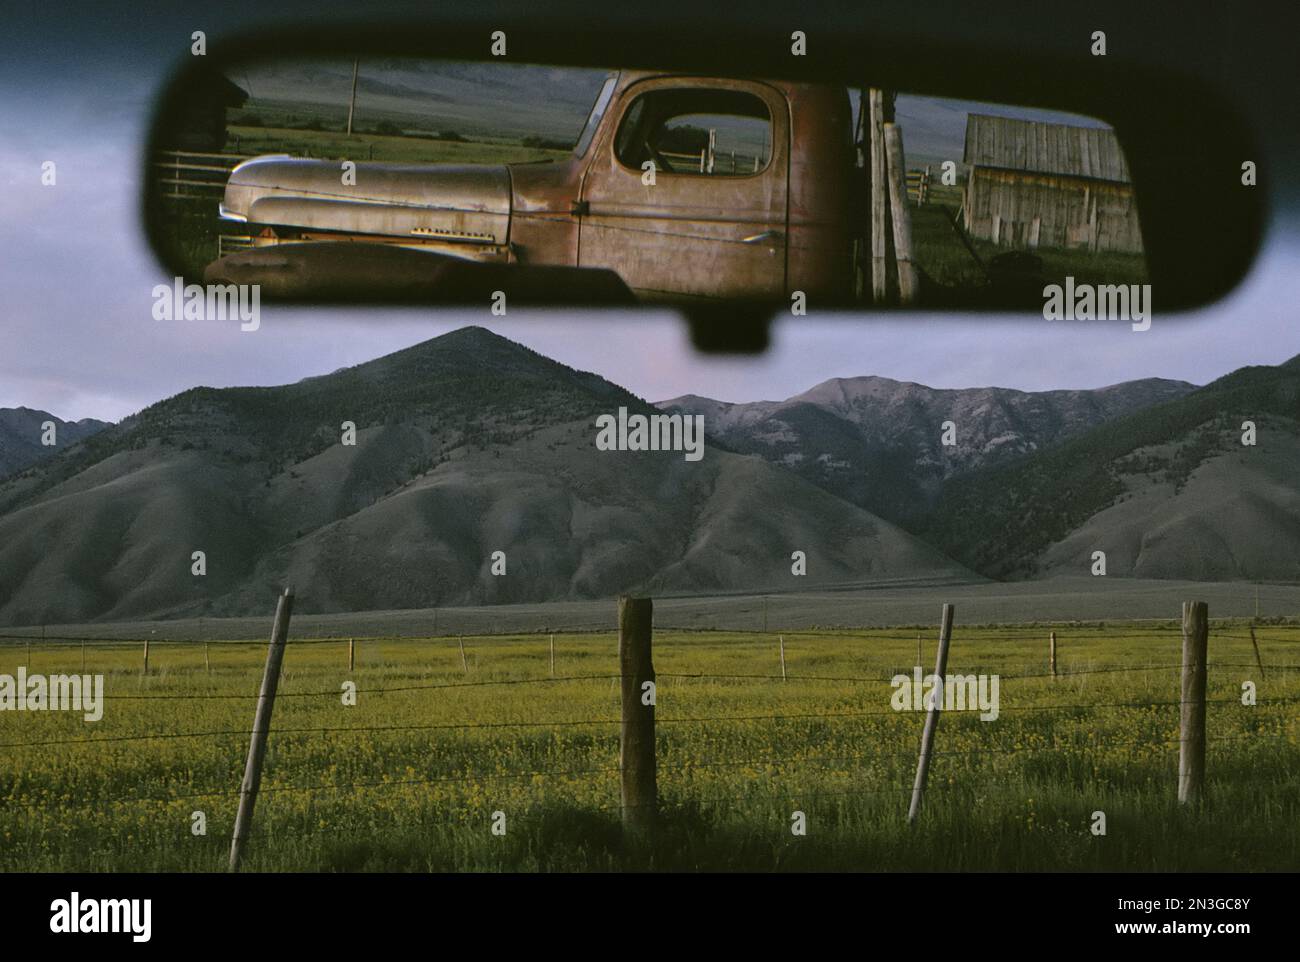 Alte Truck und Scheune spiegeln sich in einem Rückspiegel des Fahrzeugs wider; May, Idaho, Vereinigte Staaten von Amerika Stockfoto